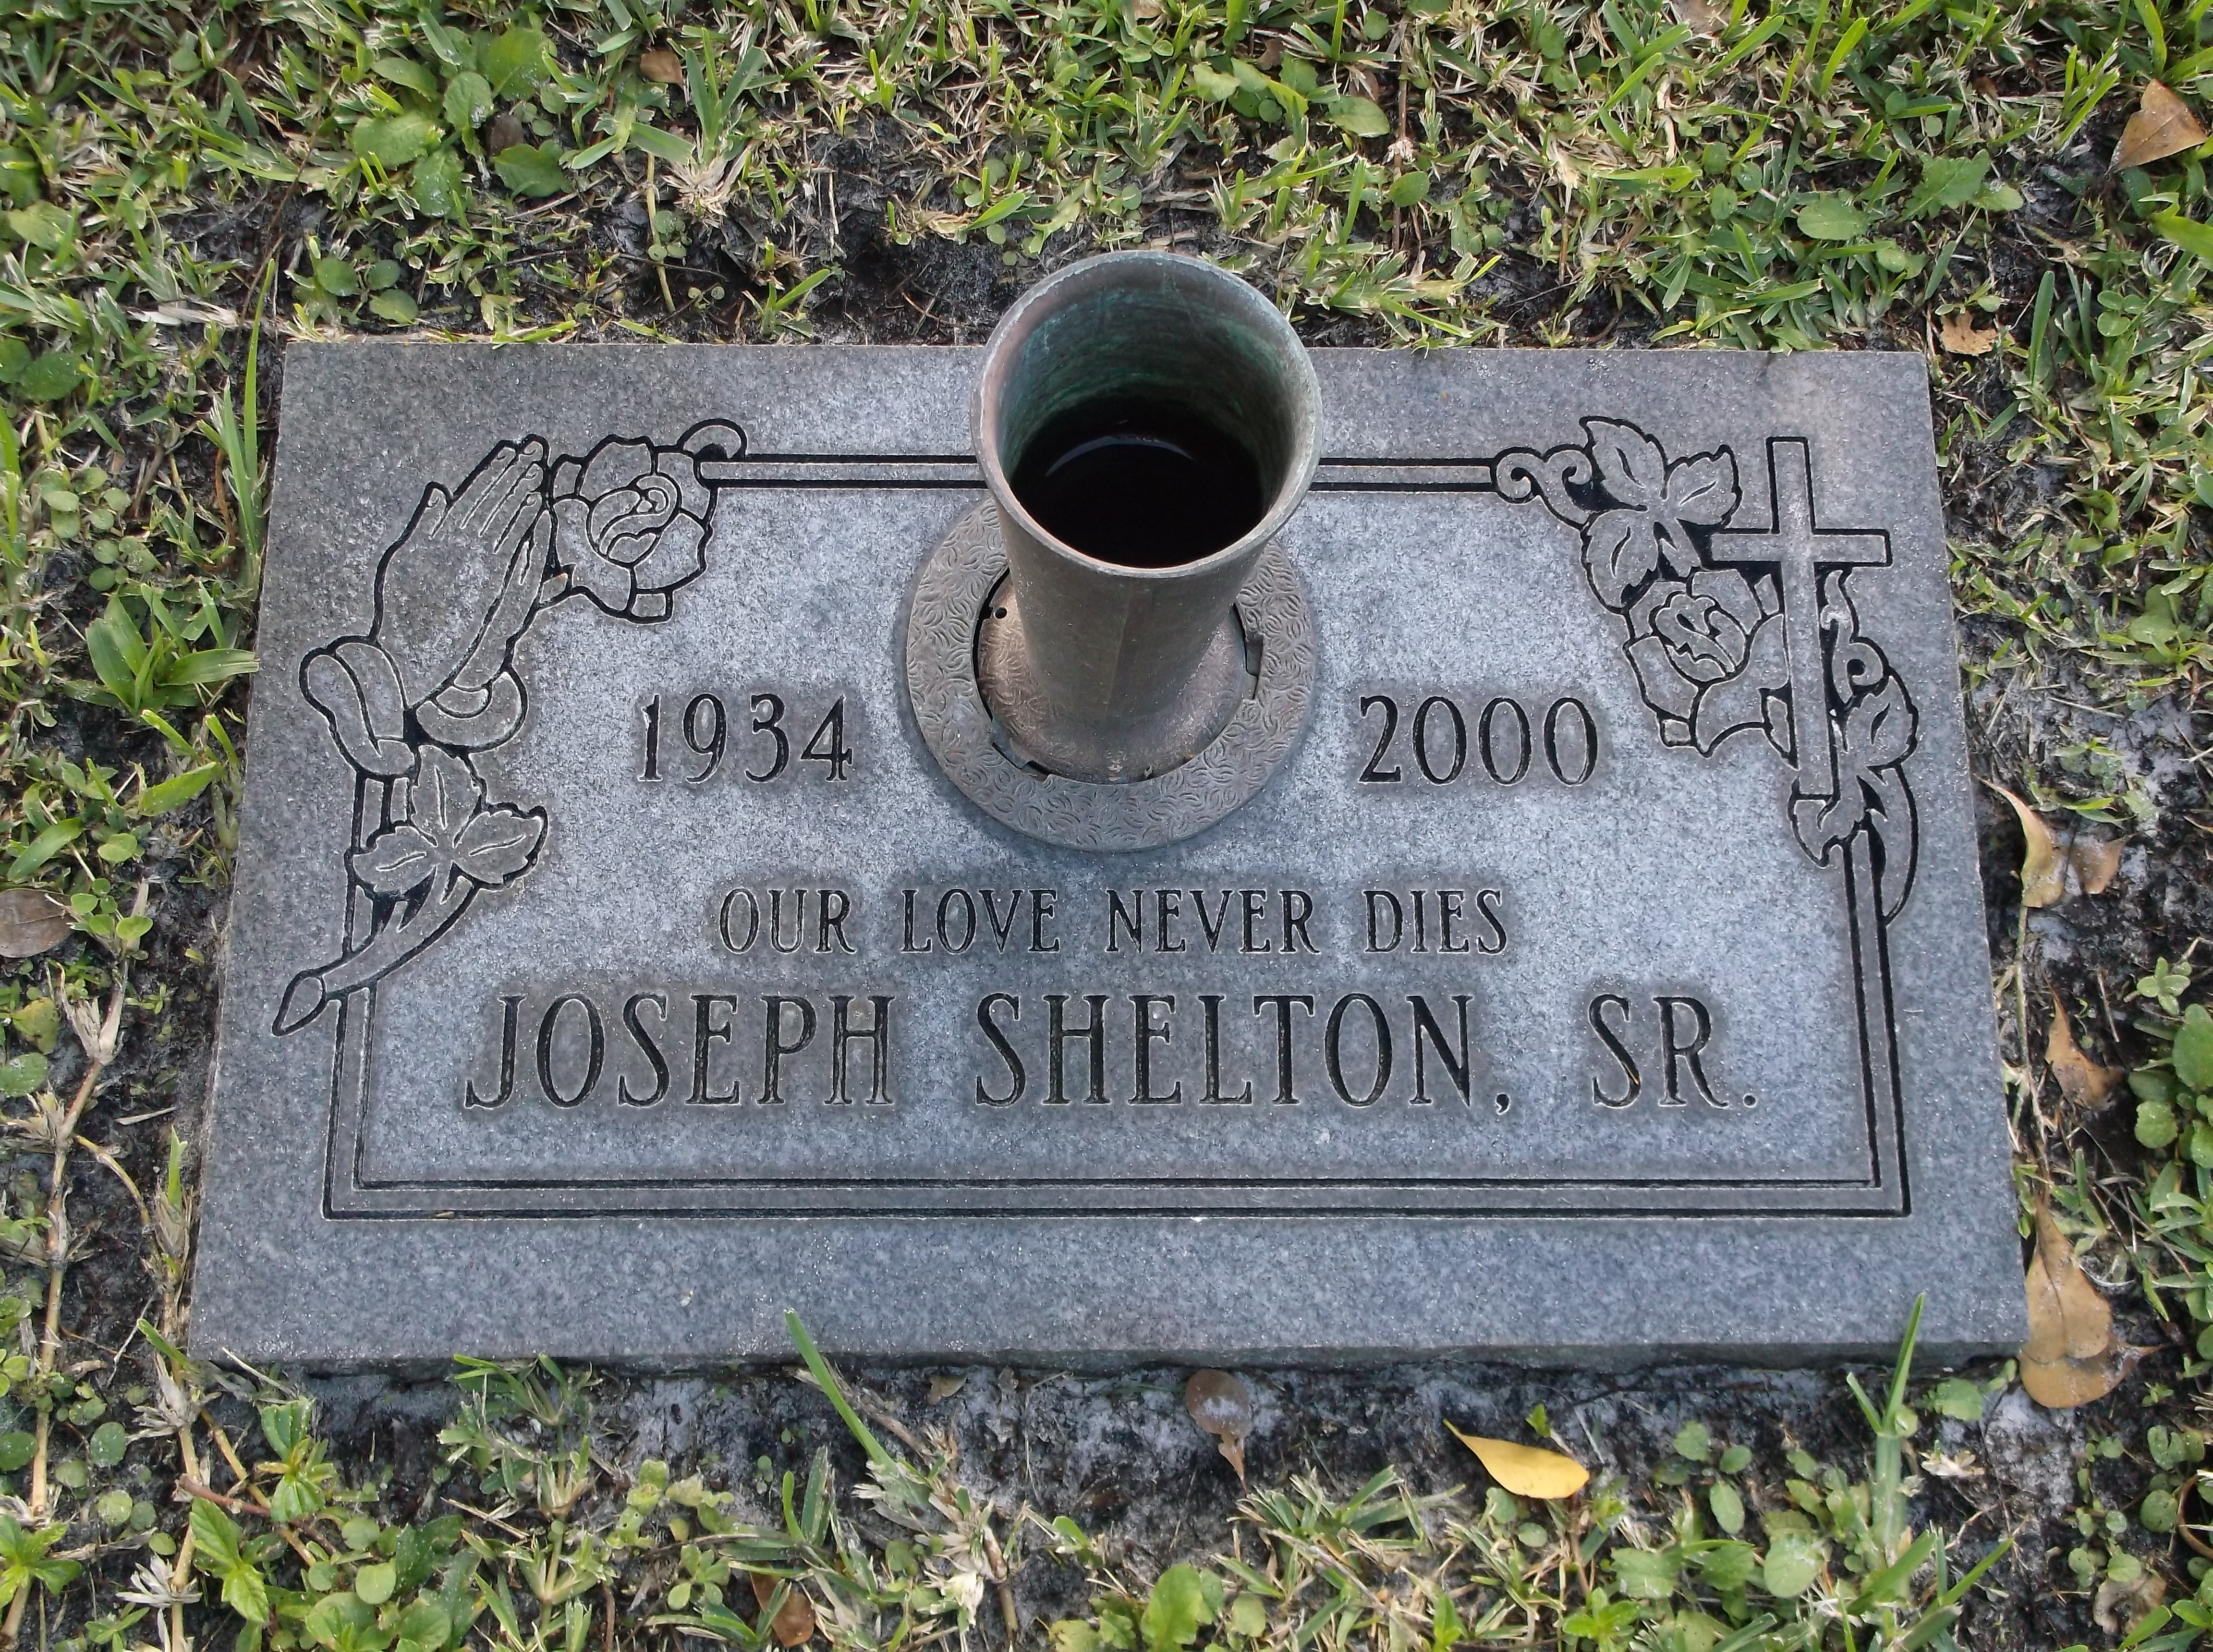 Joseph Shelton, Sr